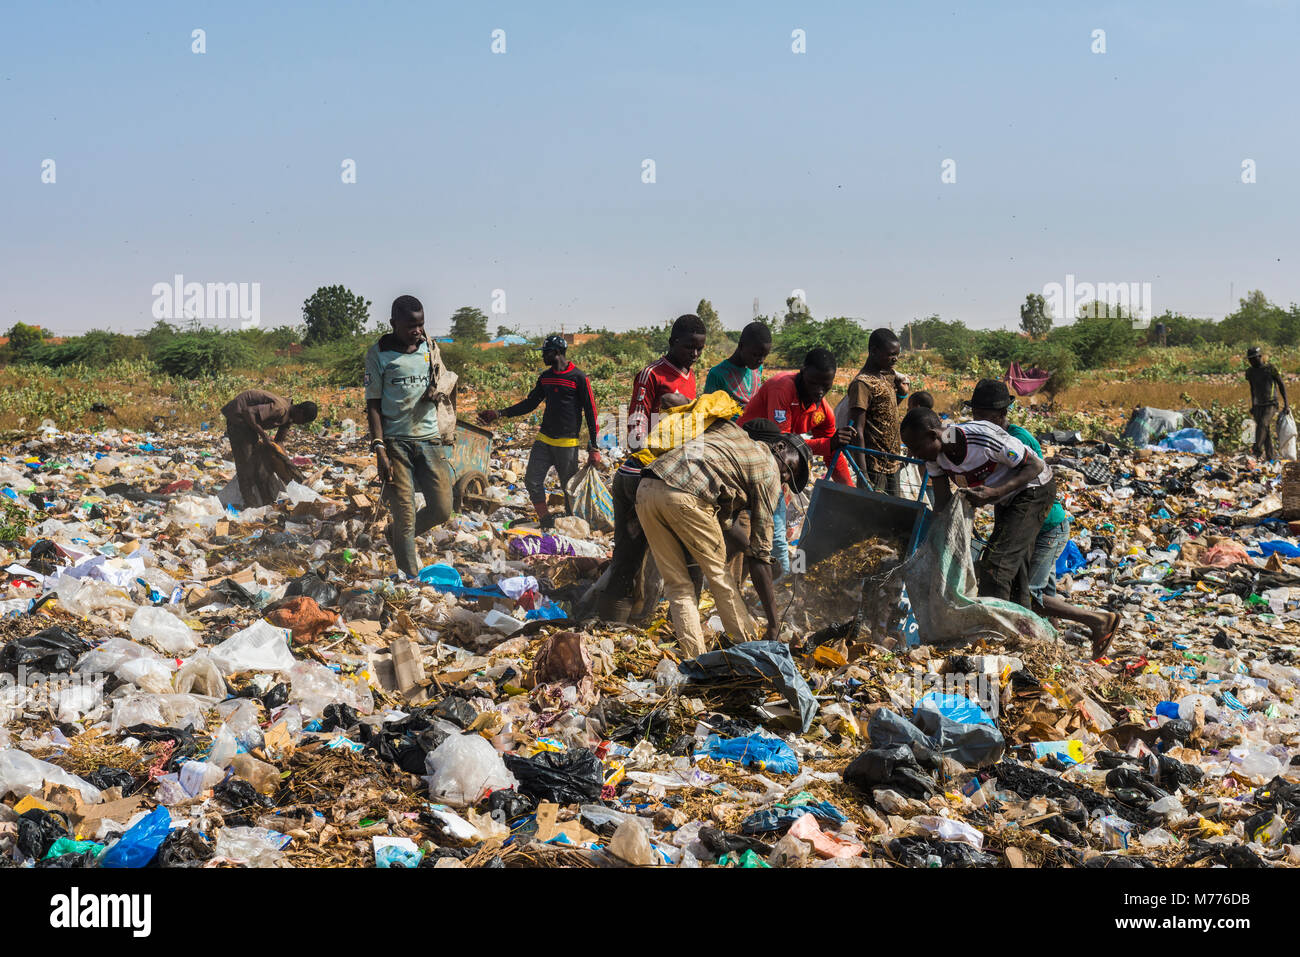 Ragazzi locali alla ricerca di oggetti di valore nella pubblica discarica, Niamey, Niger, Africa Foto Stock